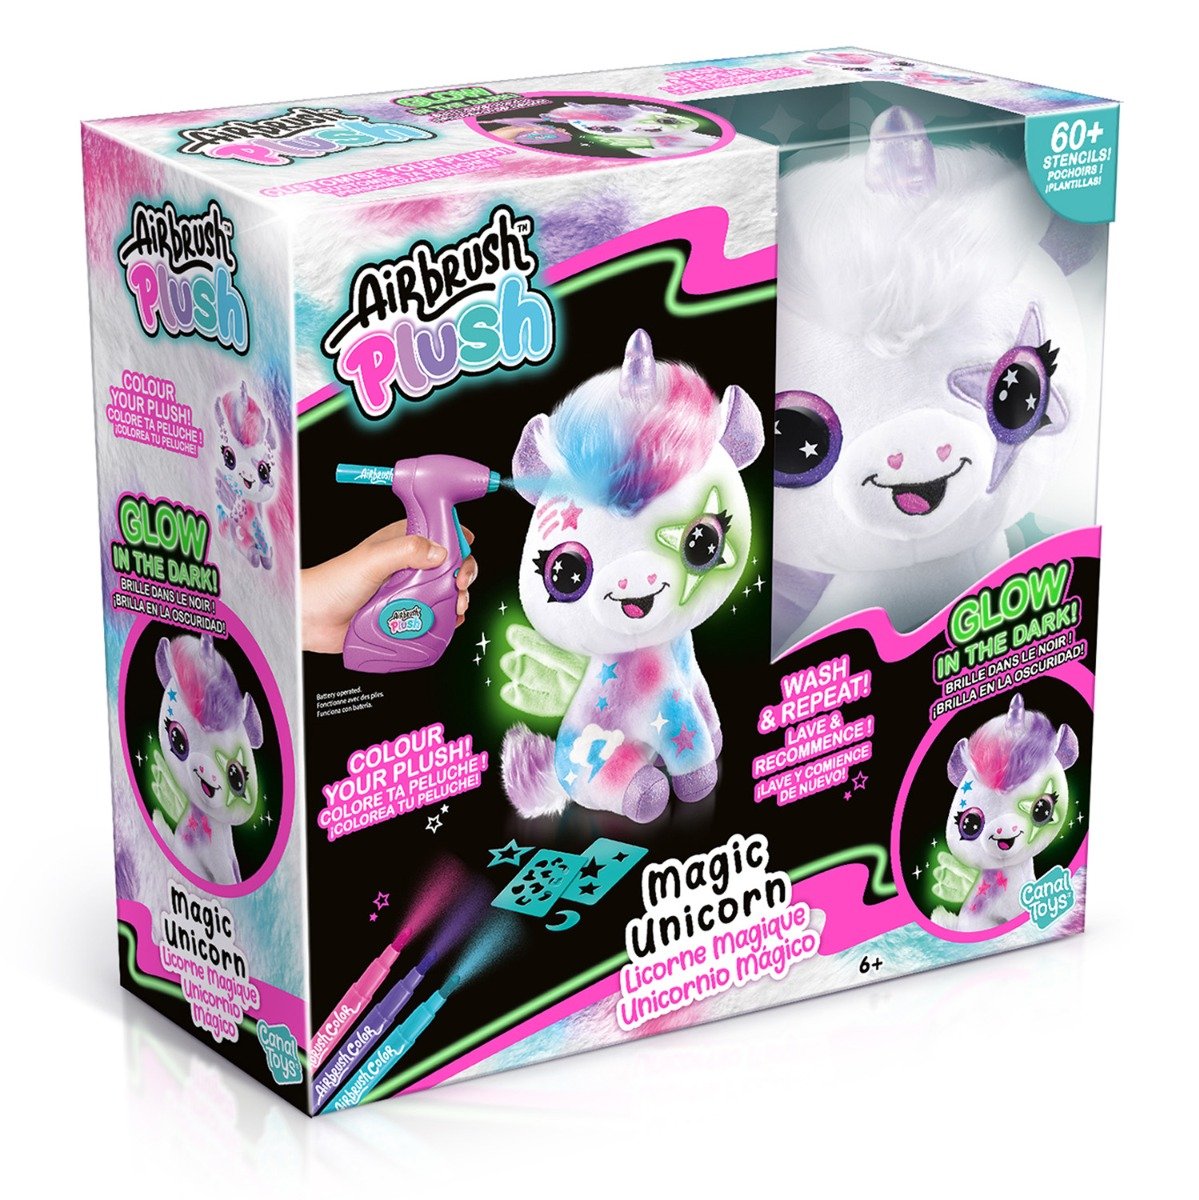 Set de joaca creativ, Airbrush Plush, Glow in the dark, Coloreaza Unicornul